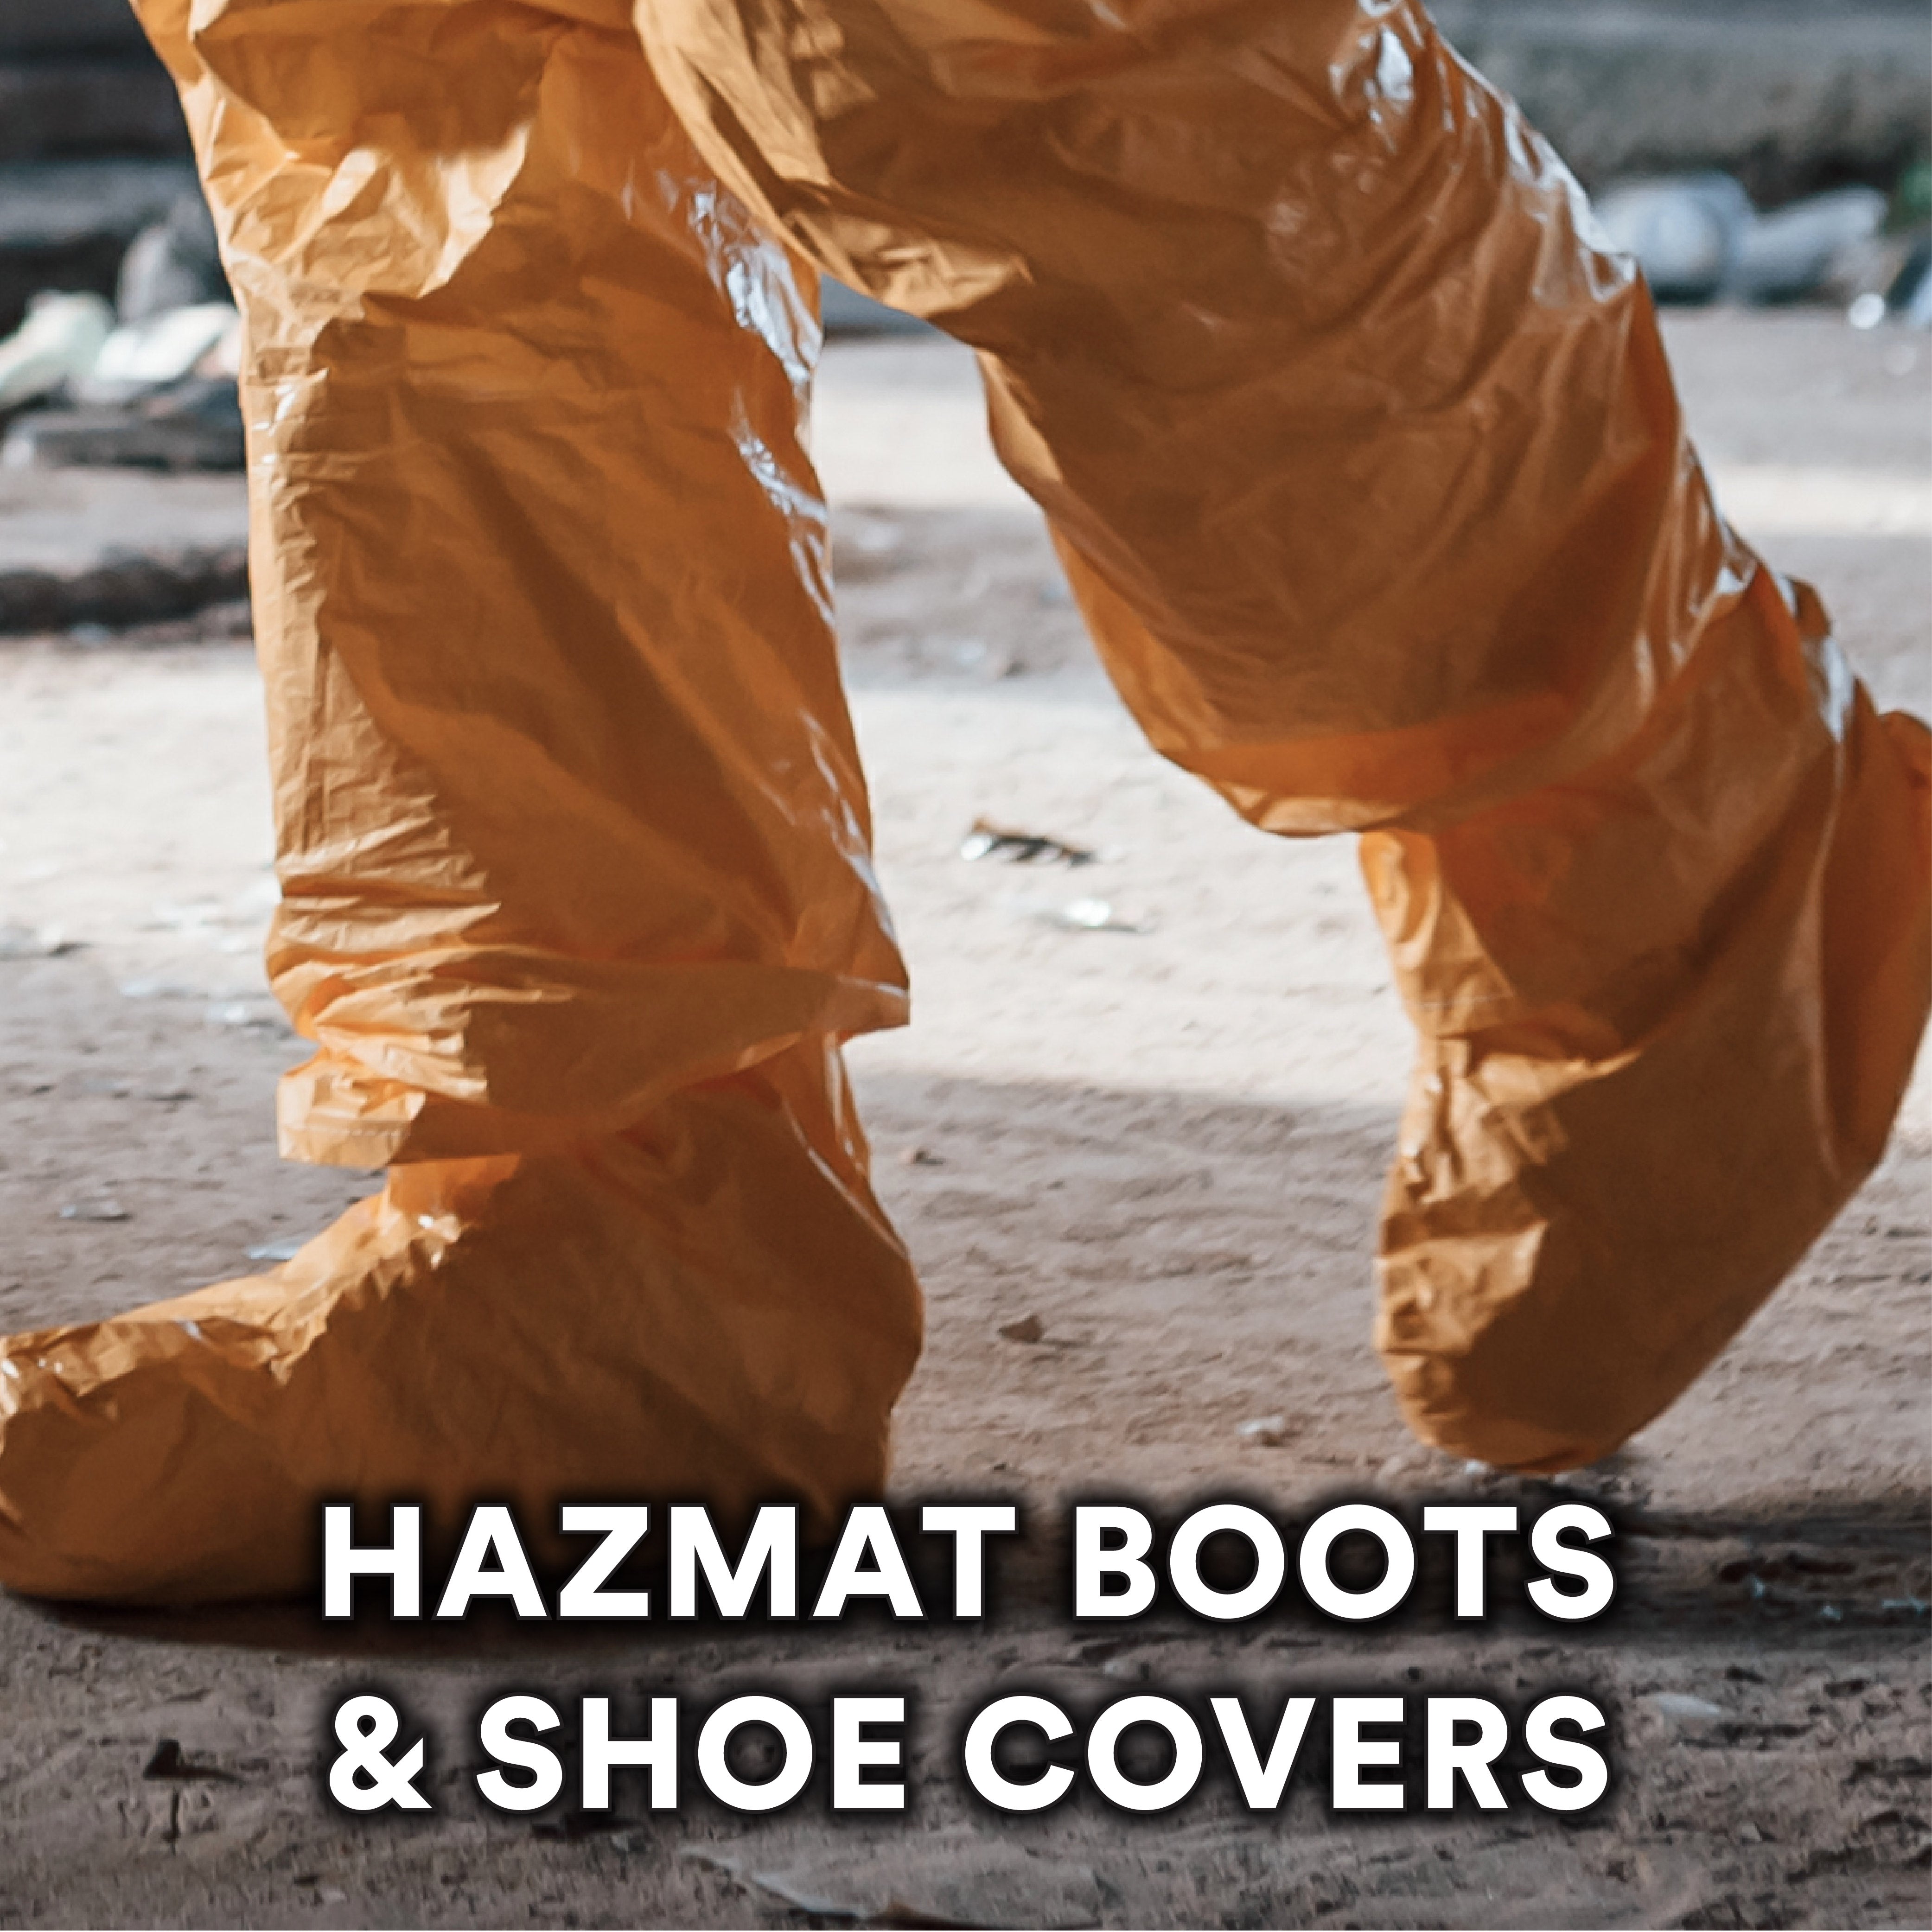 HazMat Boots & Shoe Covers